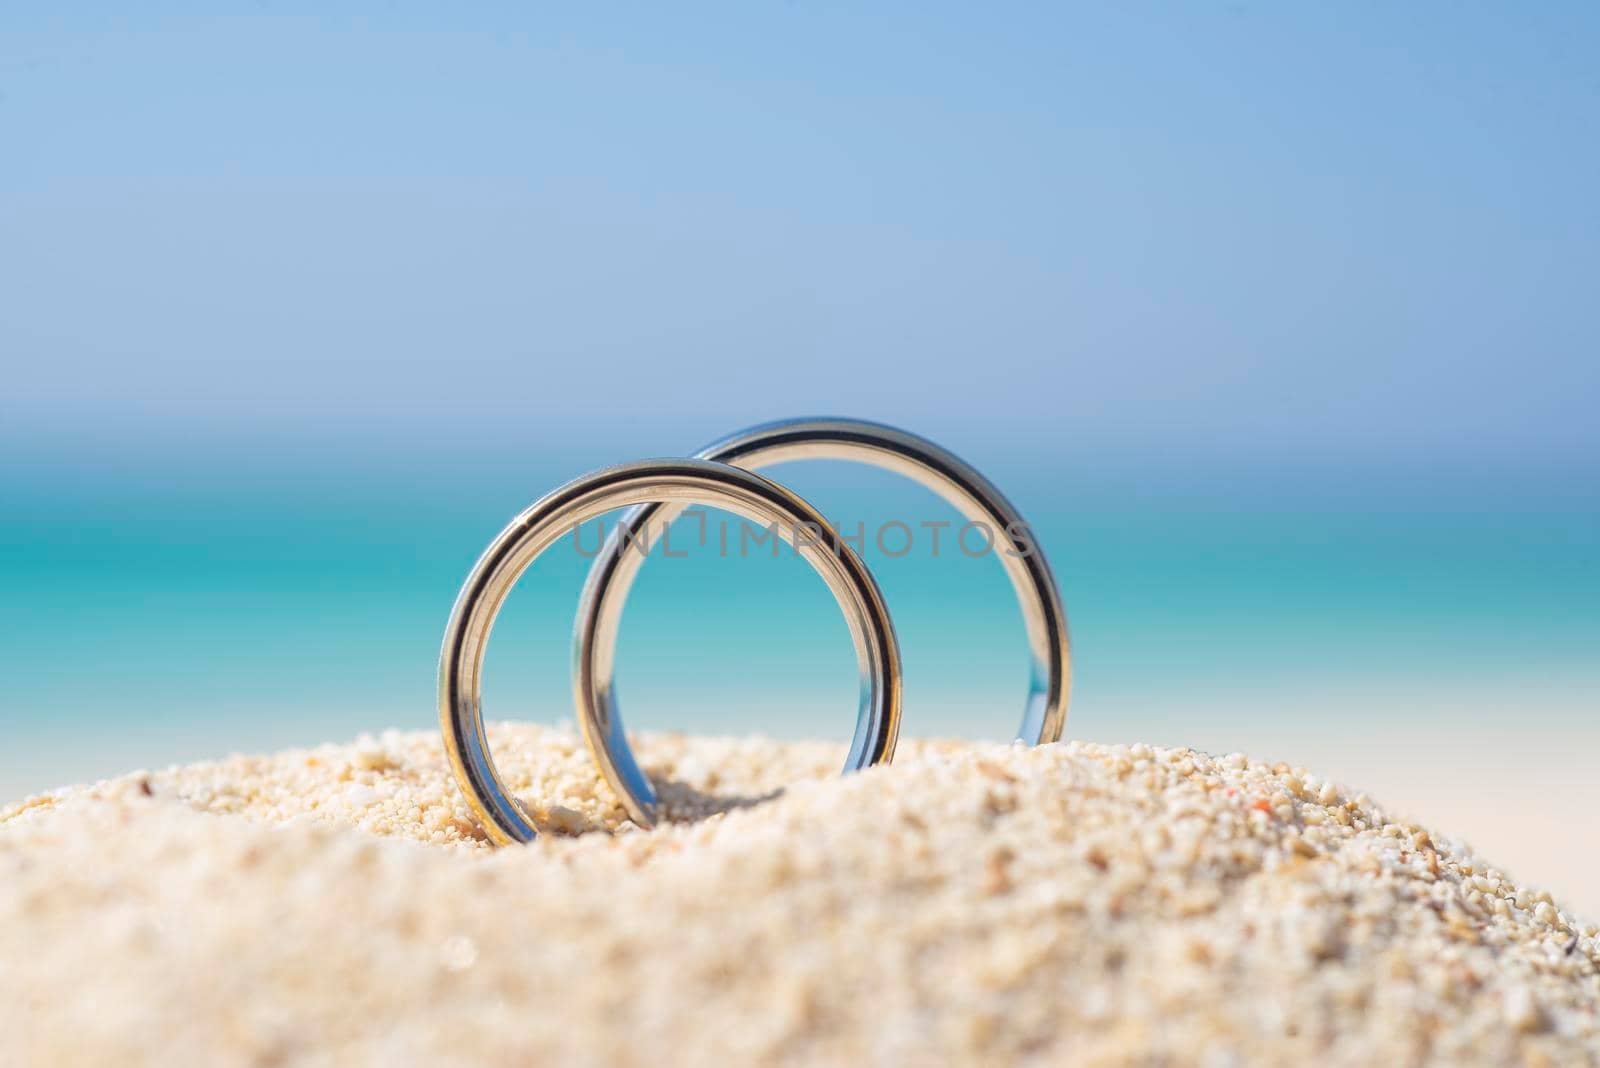 Pair wedding rings in sand on tropical beach by paulvinten